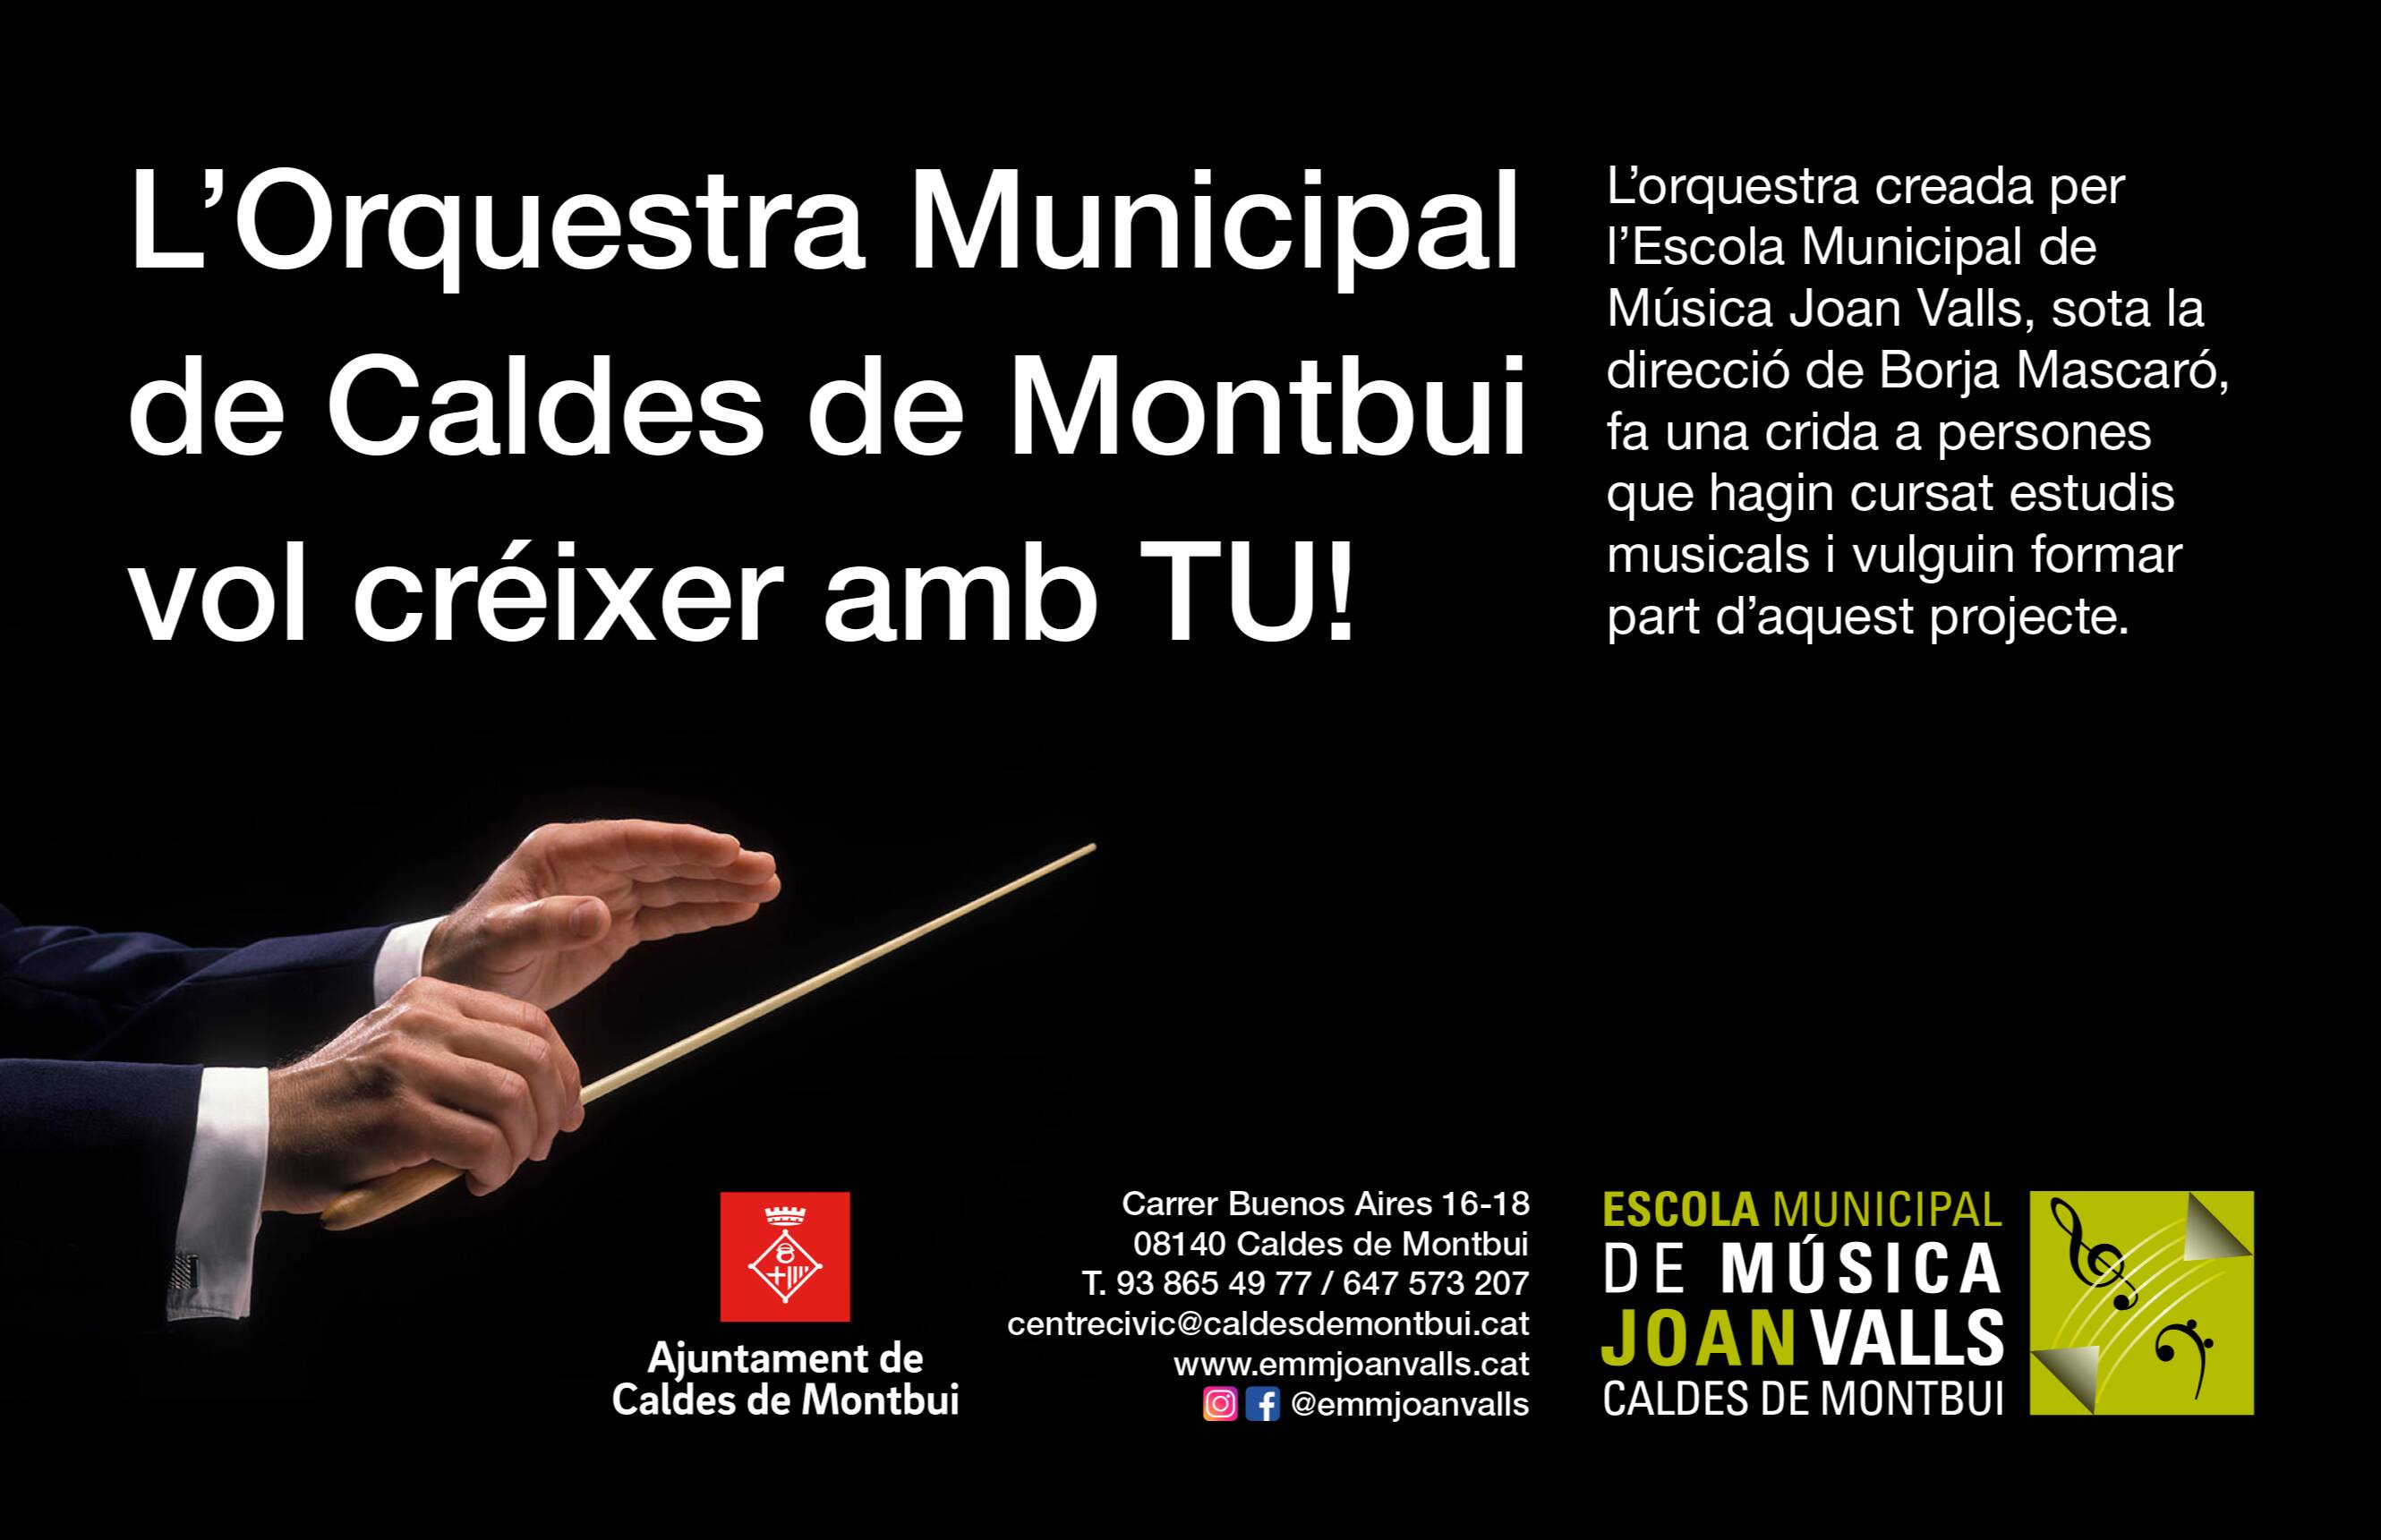 L'EMM Joan Valls de Caldes de Montbui fa una crida per formar part de l'Orquestra Municipal